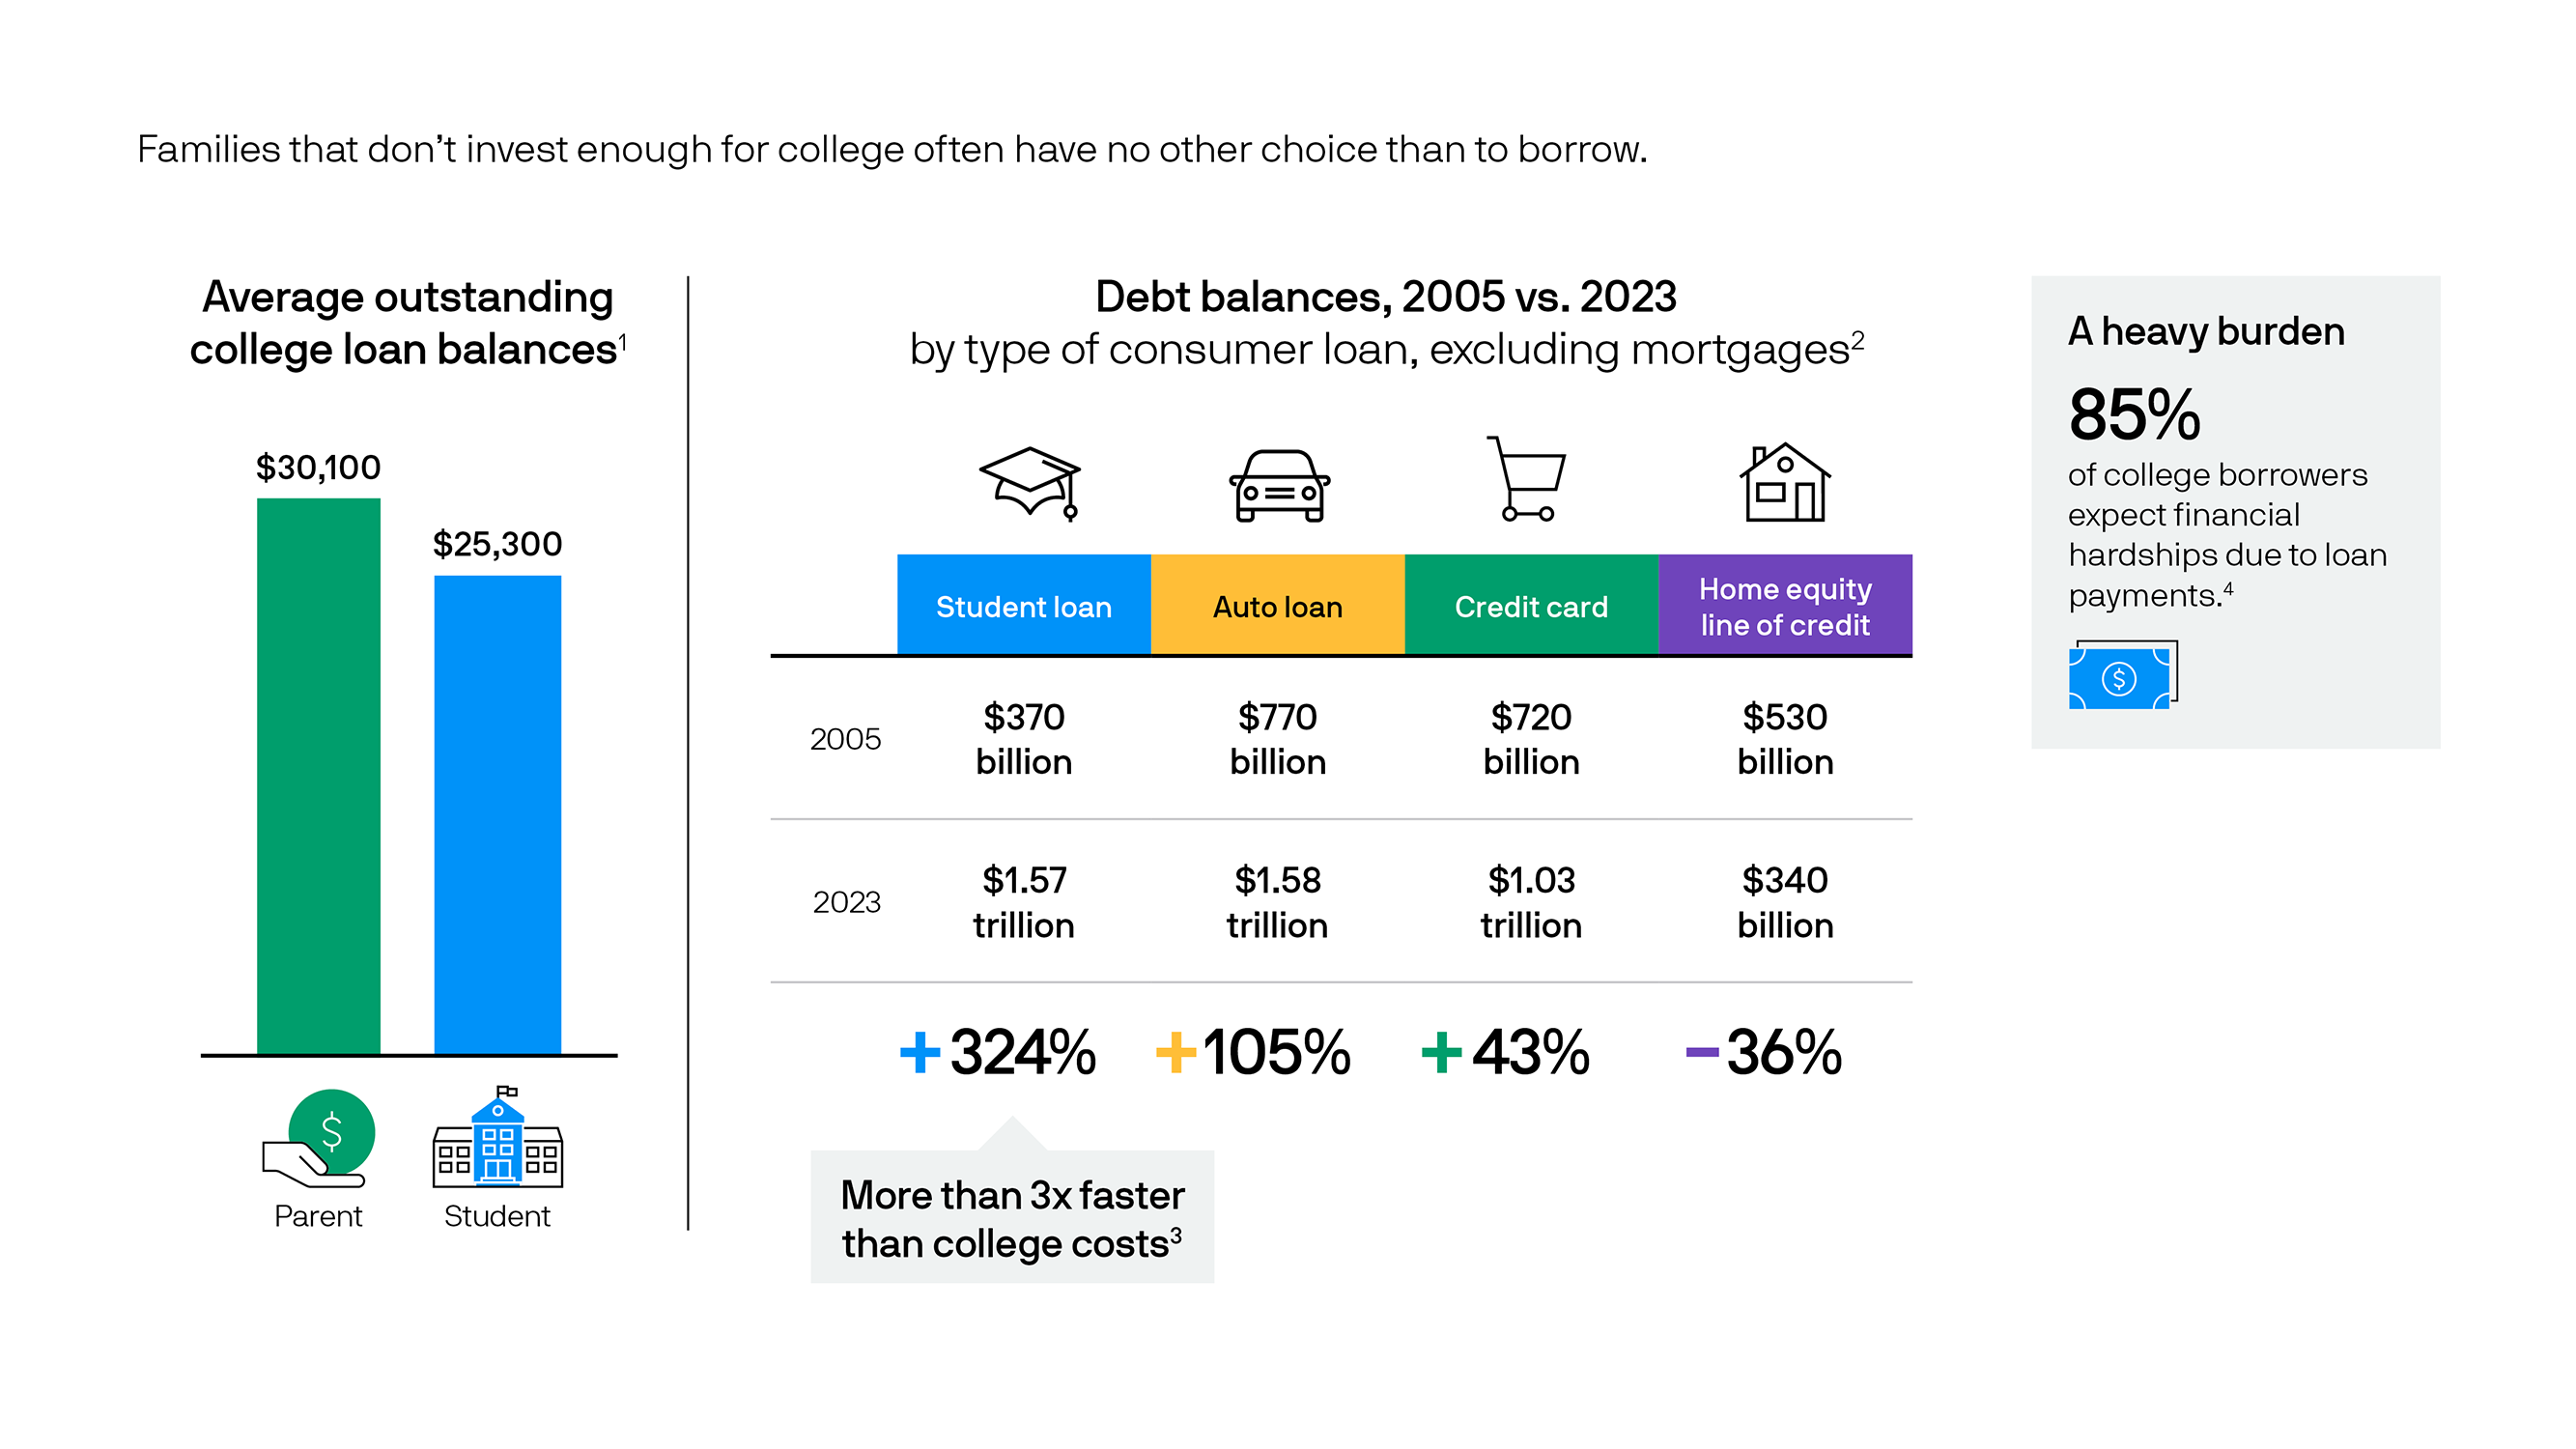 Rising college debt